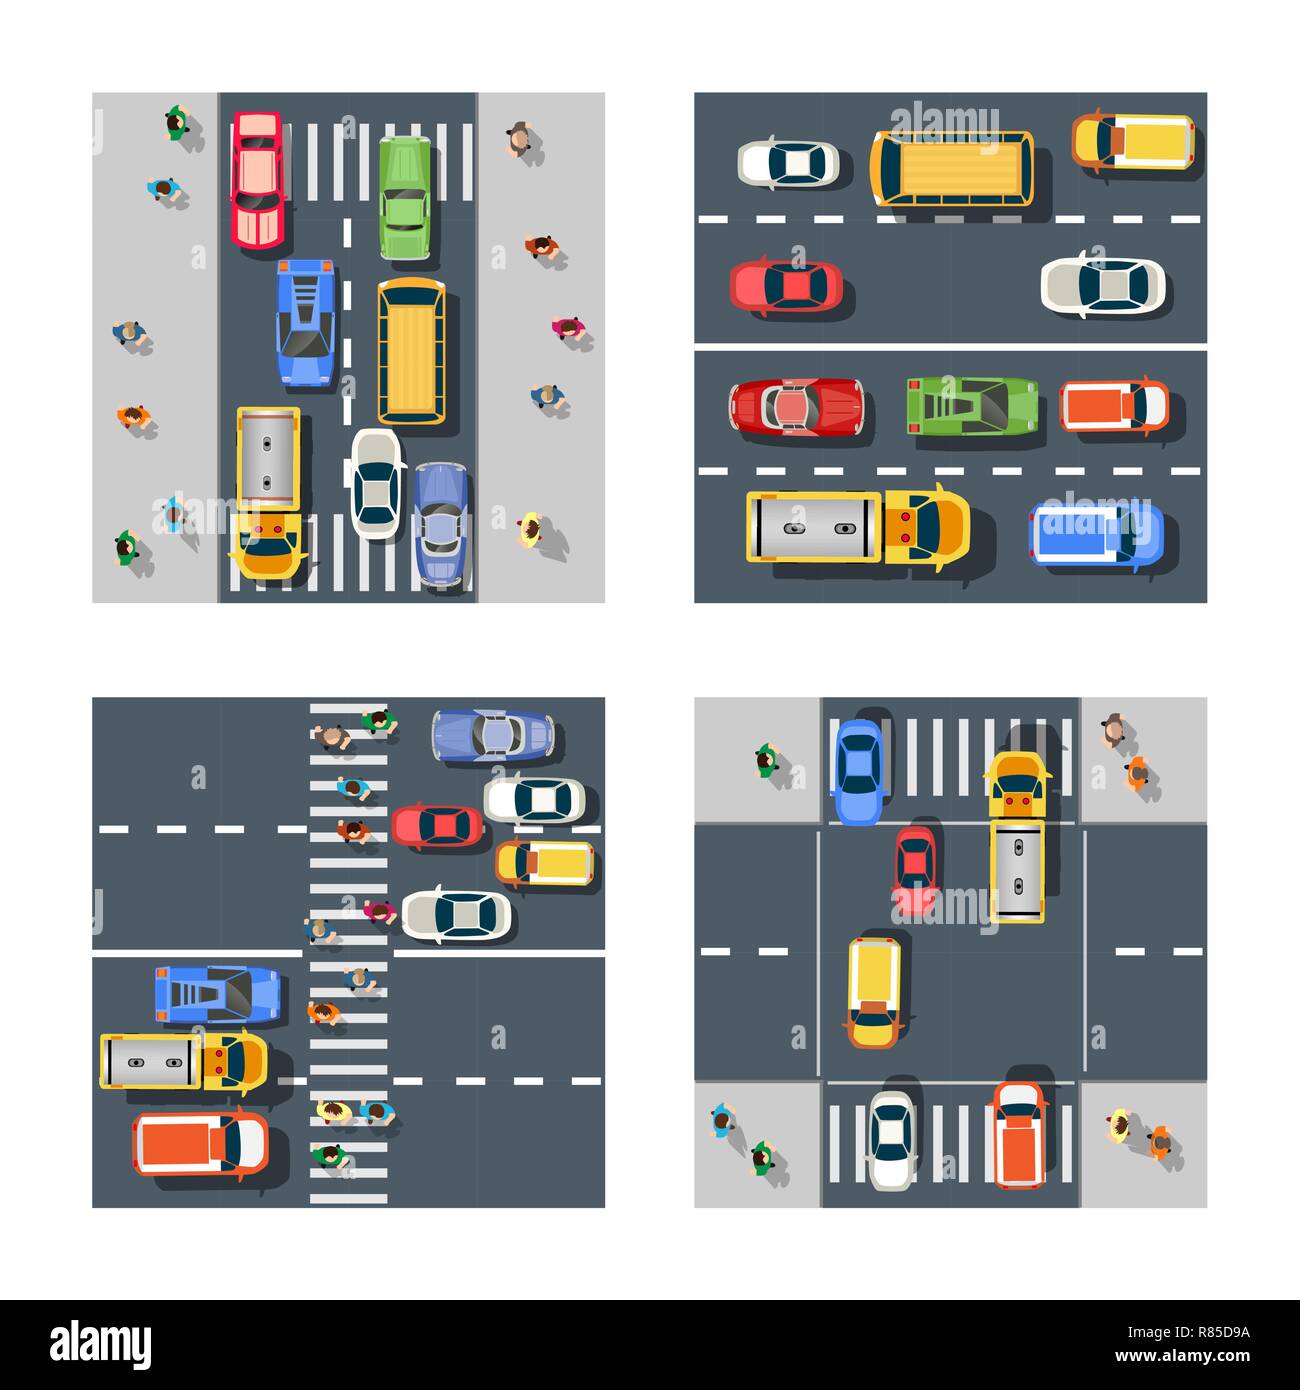 Trasporto di traffico insieme di strade con traffico, automobili e camion. Strade urbane e marciapiedi con attraversamenti pedonali e persone Illustrazione Vettoriale